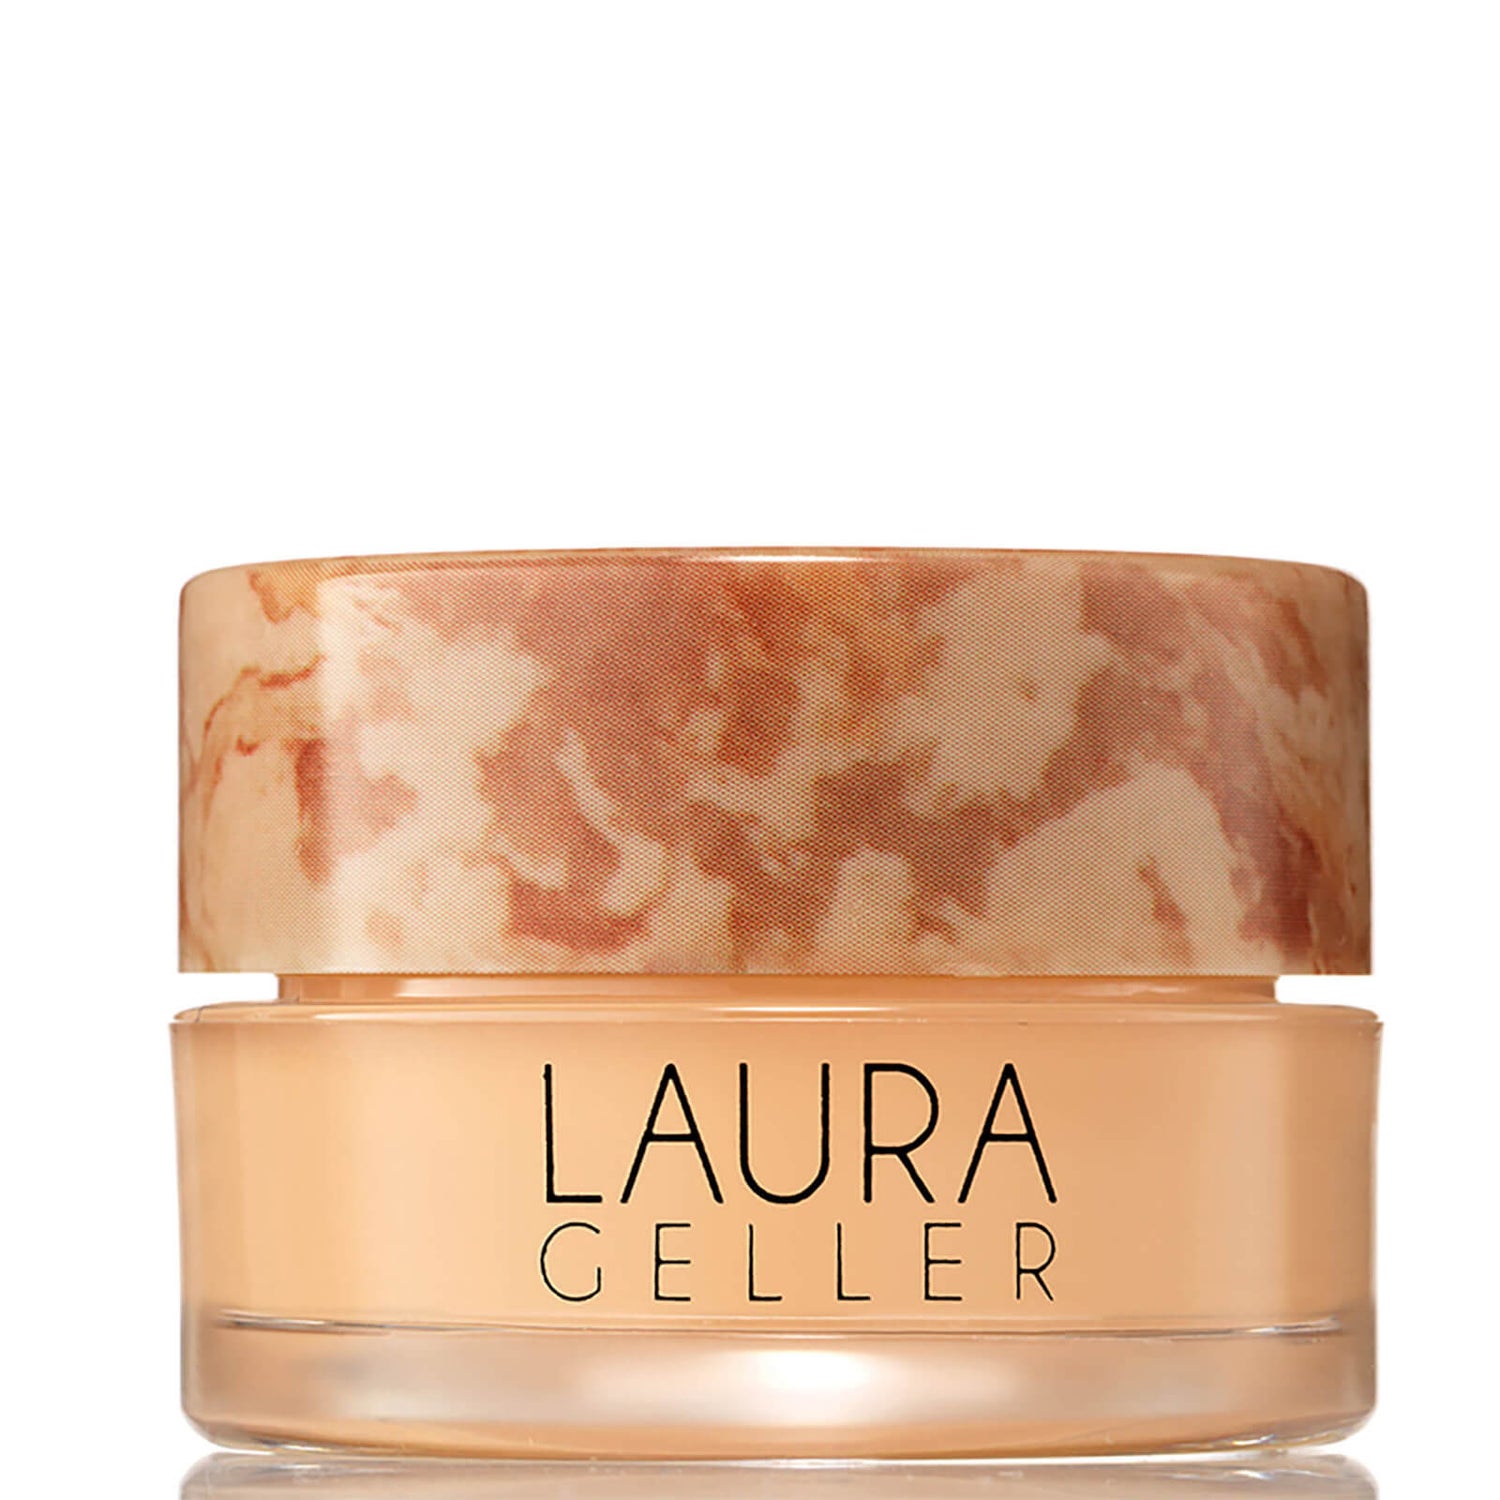 Laura Geller Baked Radiance Cream Concealer Осветляющий консилер 6мл